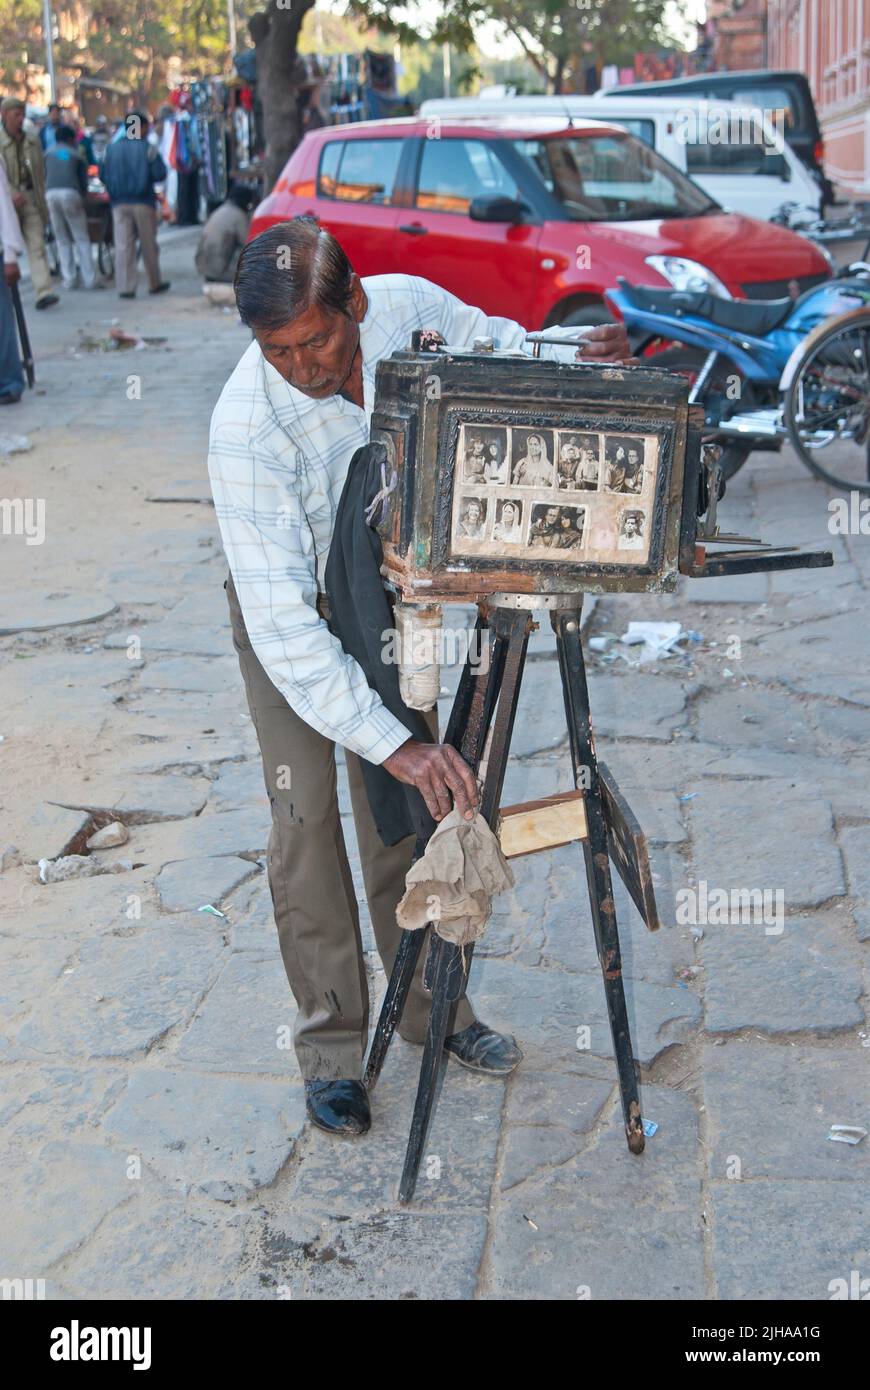 Old Fashion Fotograf auf der Straße - Indien Stockfoto